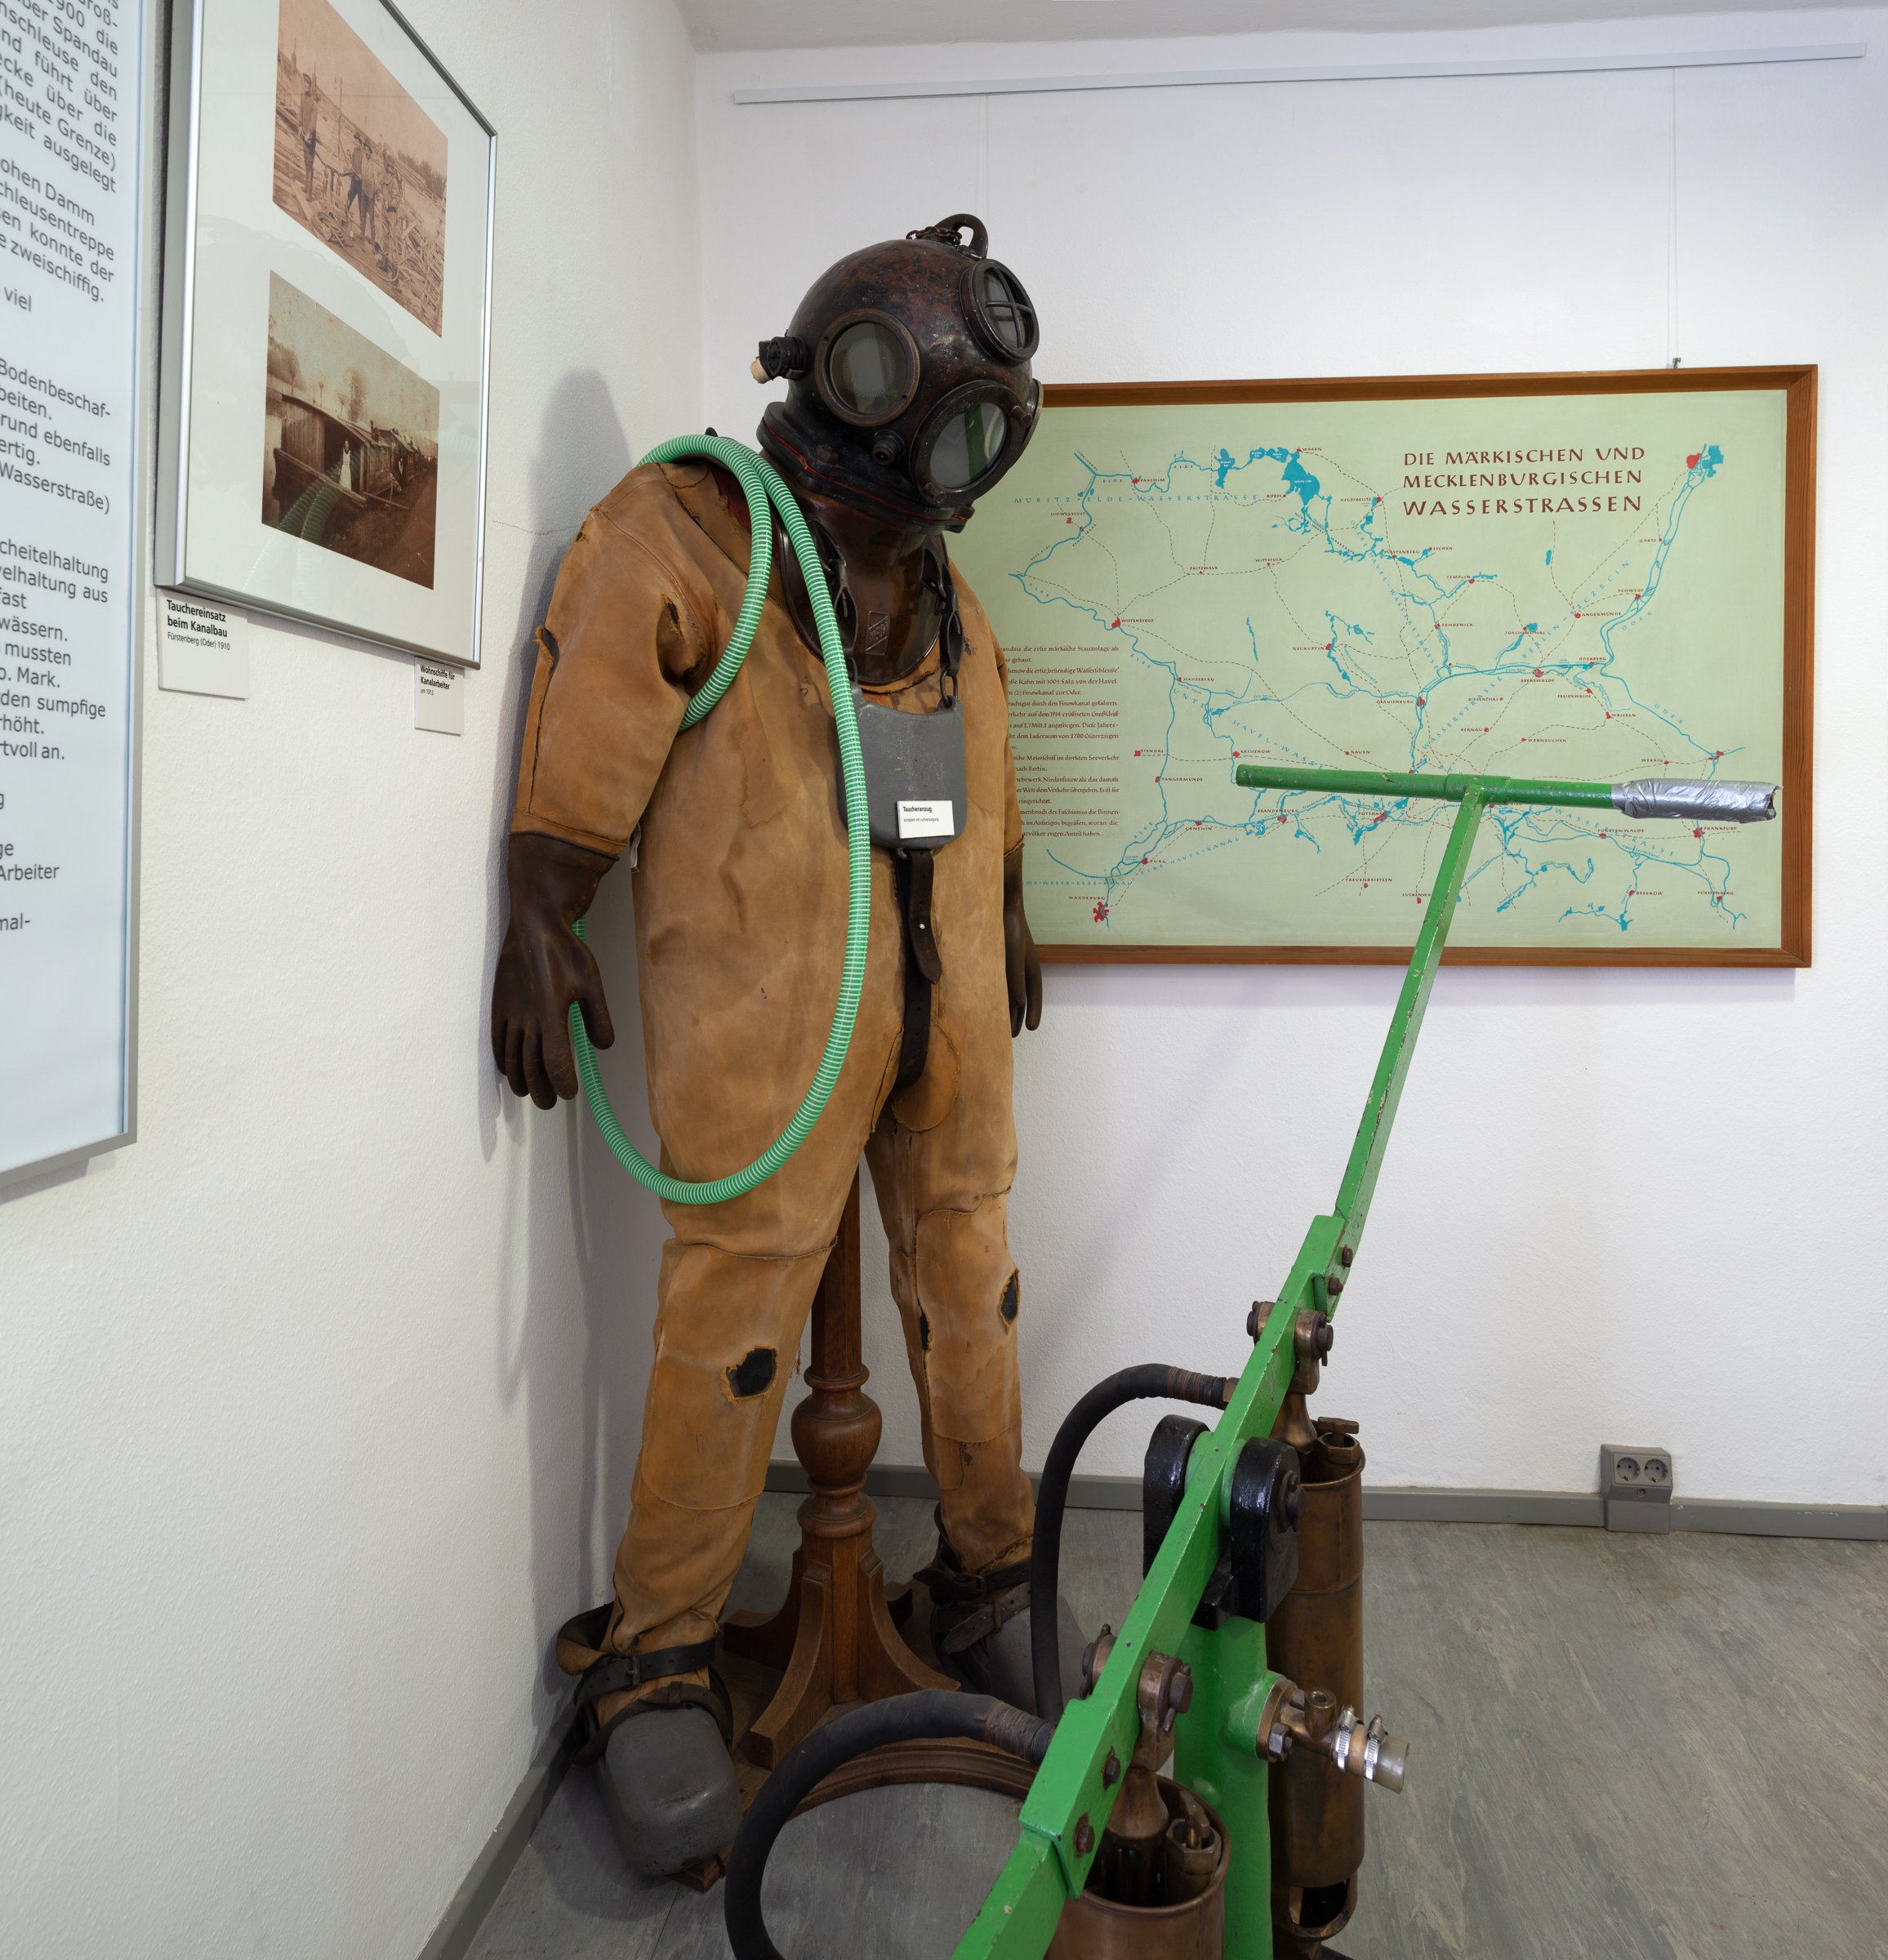 Taucheranzug mit Helm (Binnenschifffahrts-Museum Oderberg CC BY-NC-SA)